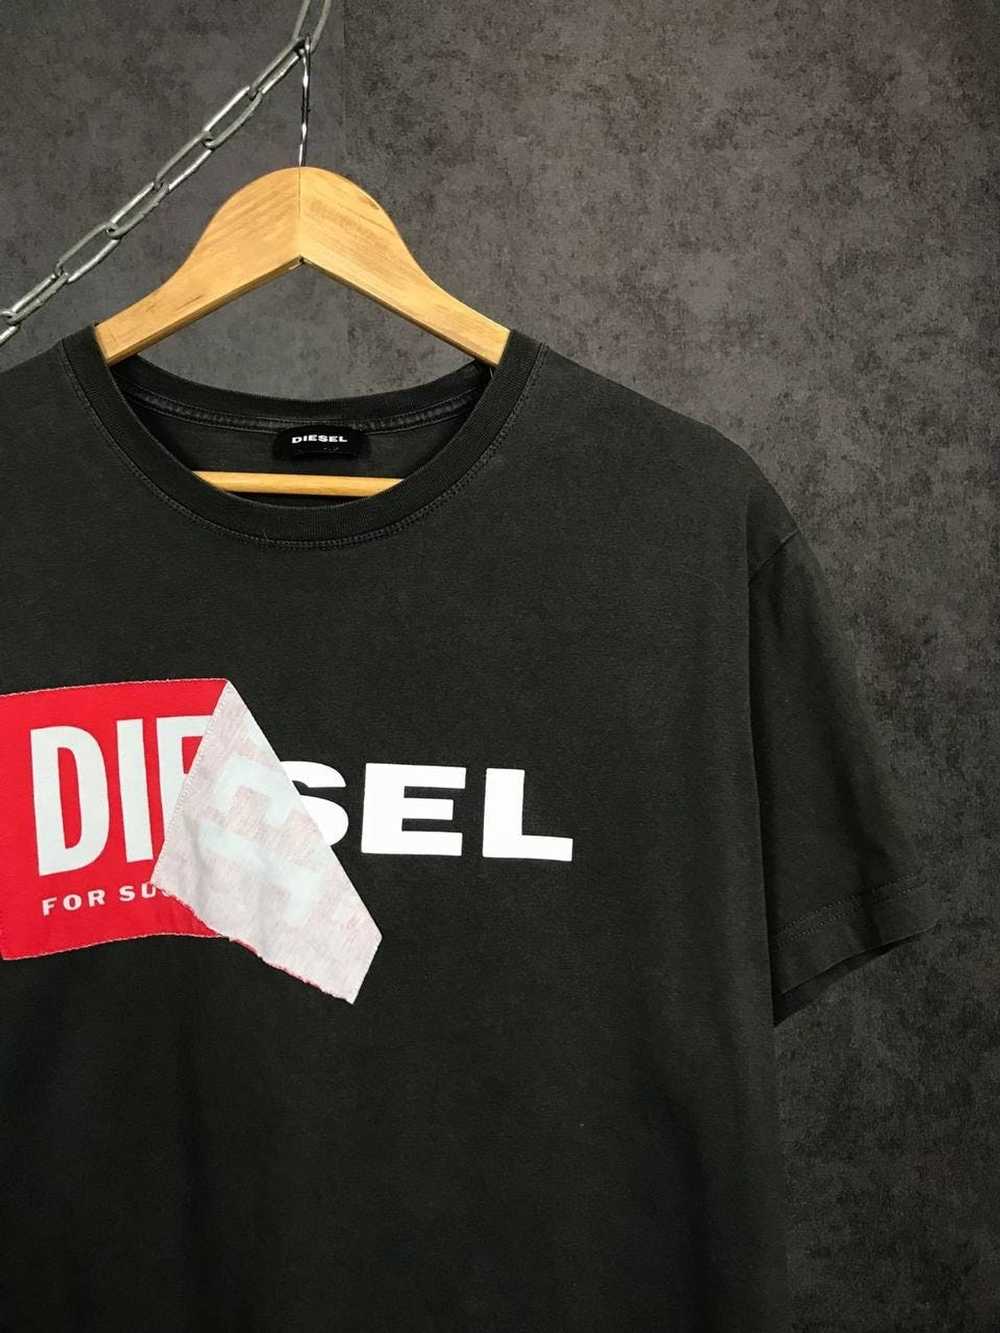 Diesel × Streetwear Diesel luxury streetwear cent… - image 2